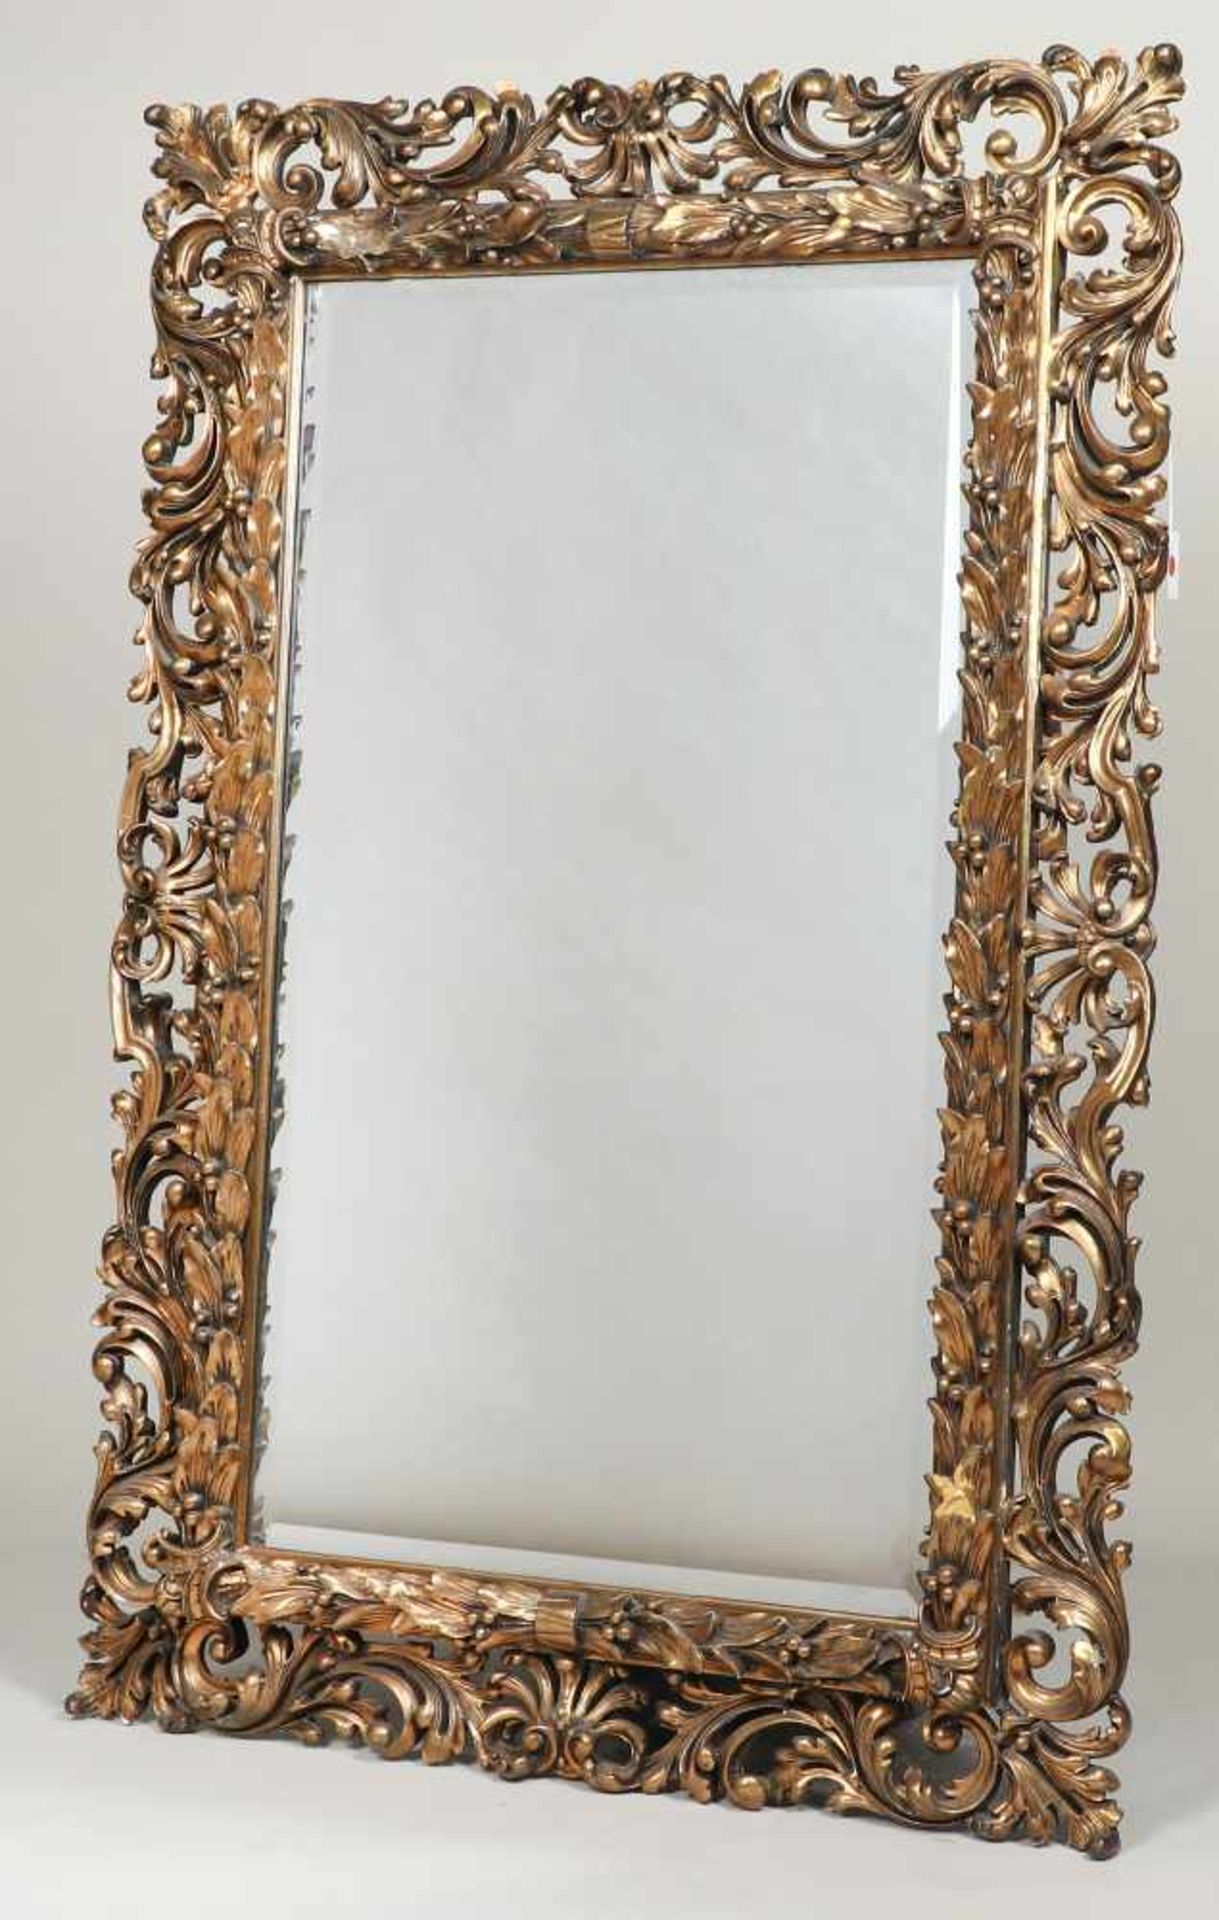 Spiegel, mit durchbrochenem BarockstilrahmenLorbeerrelief, Facetteglas, 158 x 102 cm, unvol